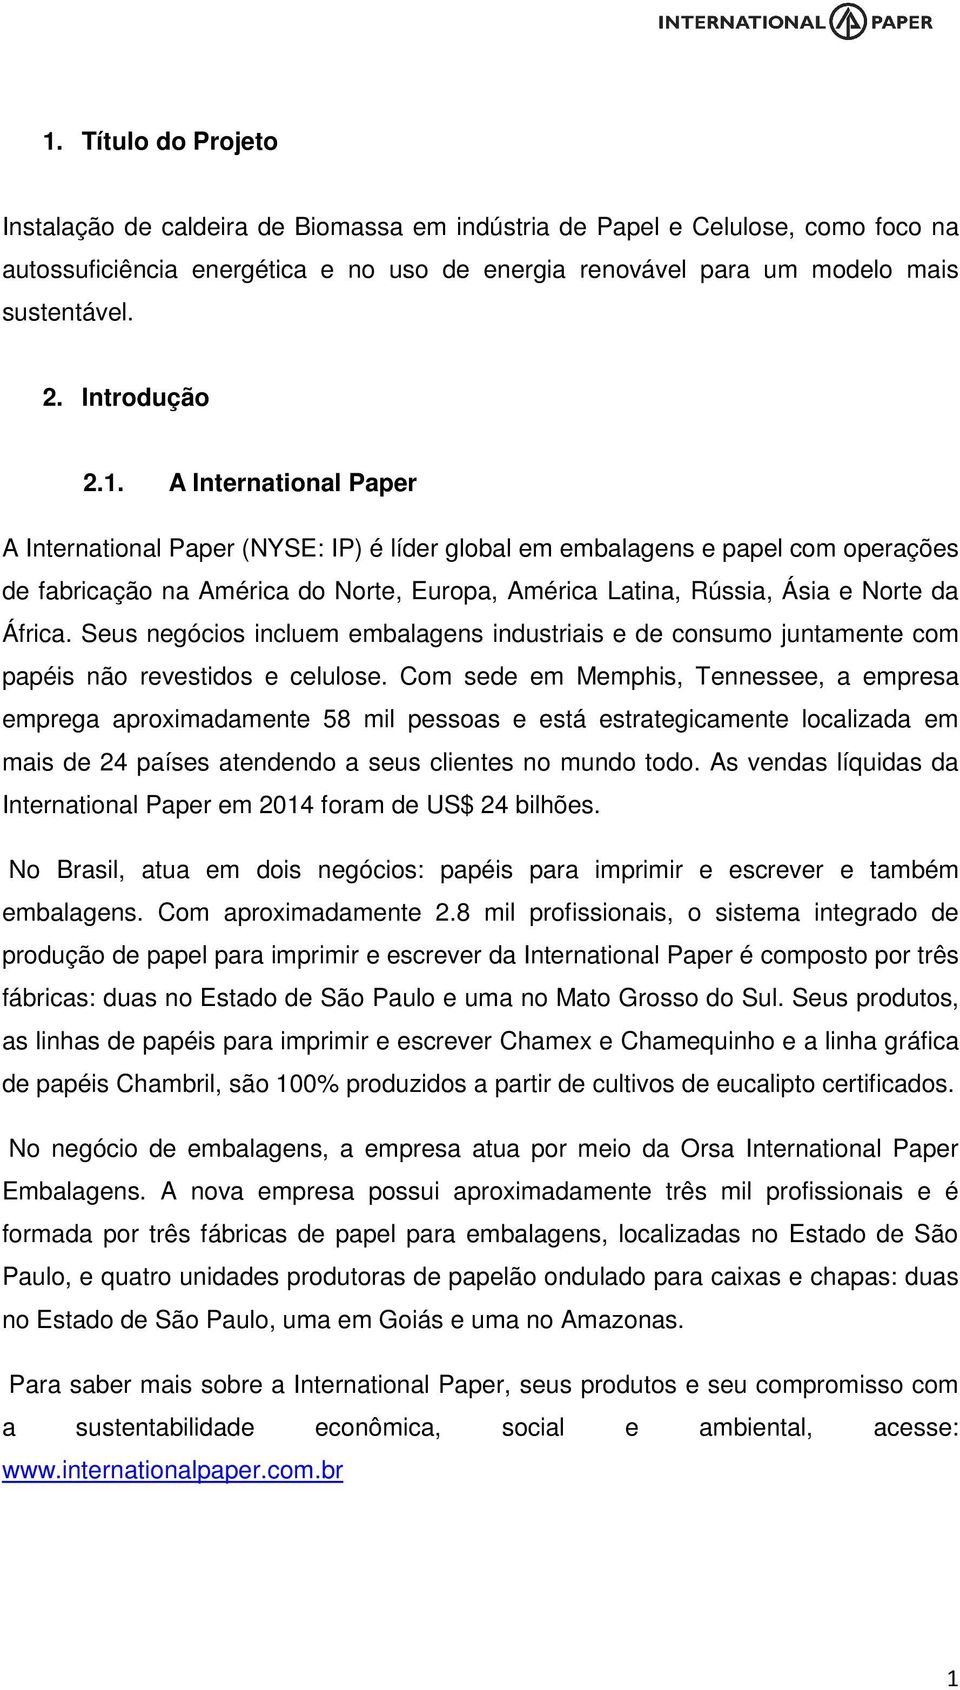 A International Paper A International Paper (NYSE: IP) é líder global em embalagens e papel com operações de fabricação na América do Norte, Europa, América Latina, Rússia, Ásia e Norte da África.